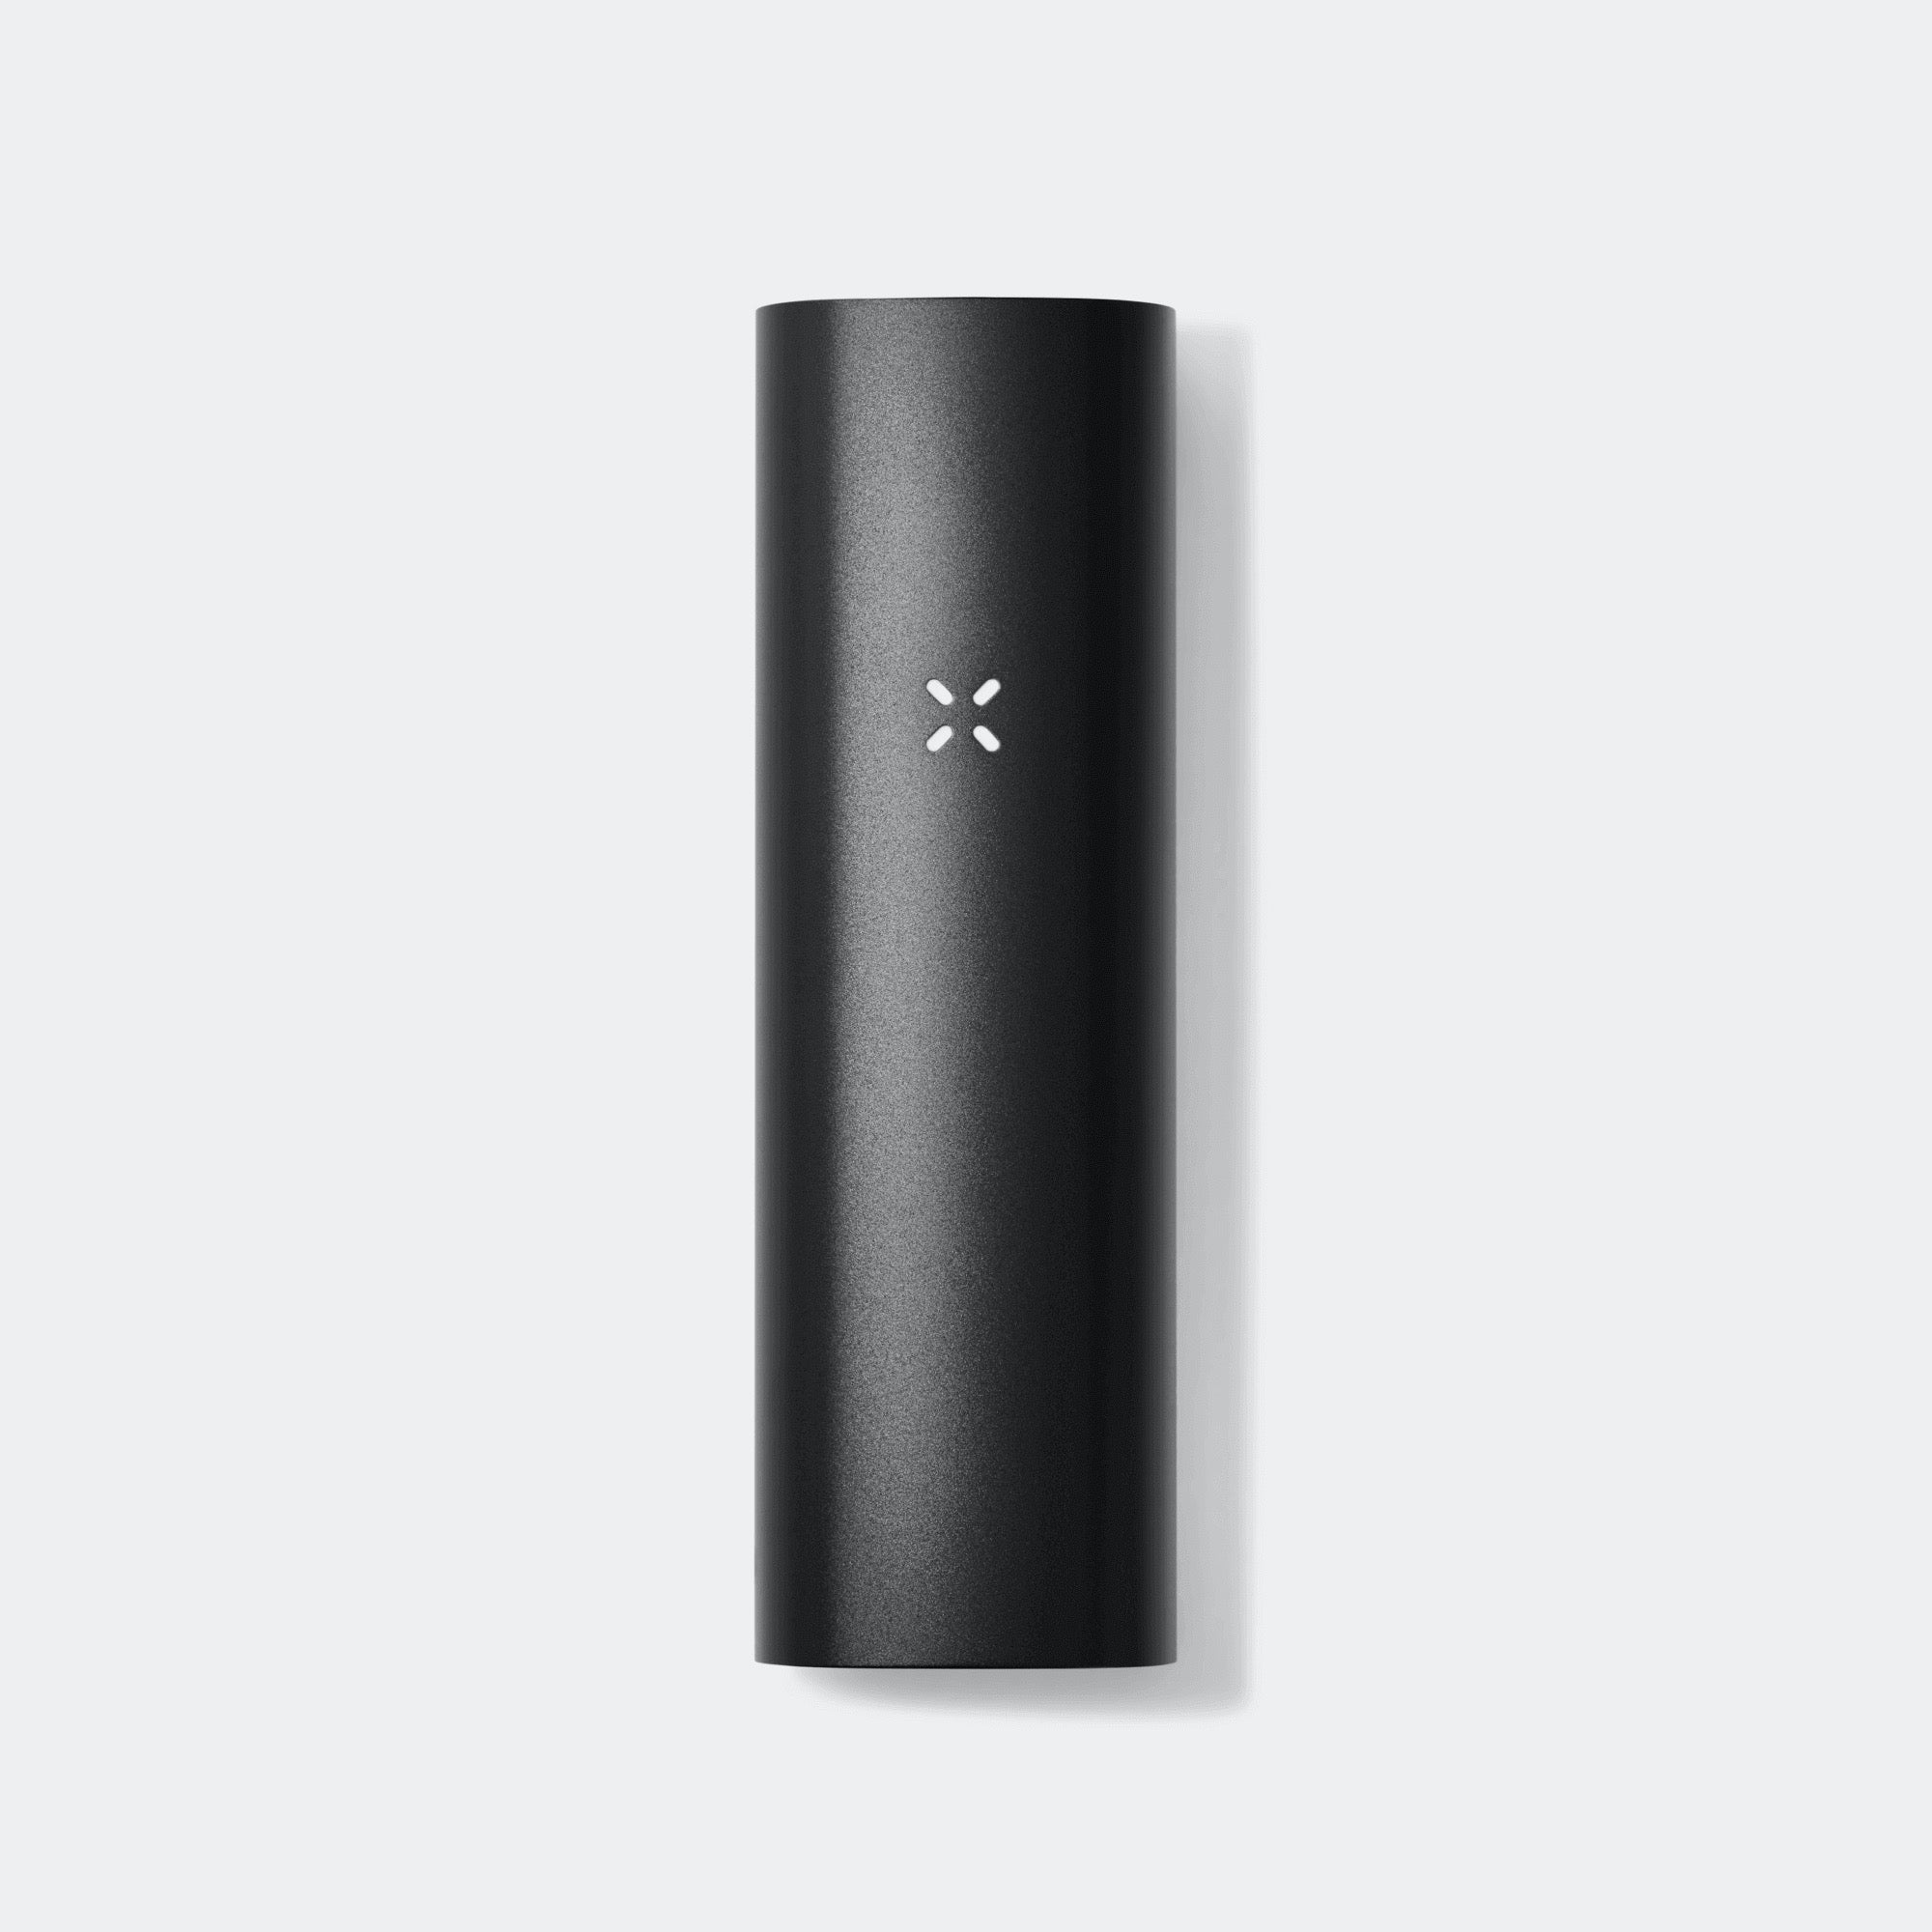 PAX 3 Vaporizer Review 2020: The iPhone of Vaping? - Haze Smoke Shop